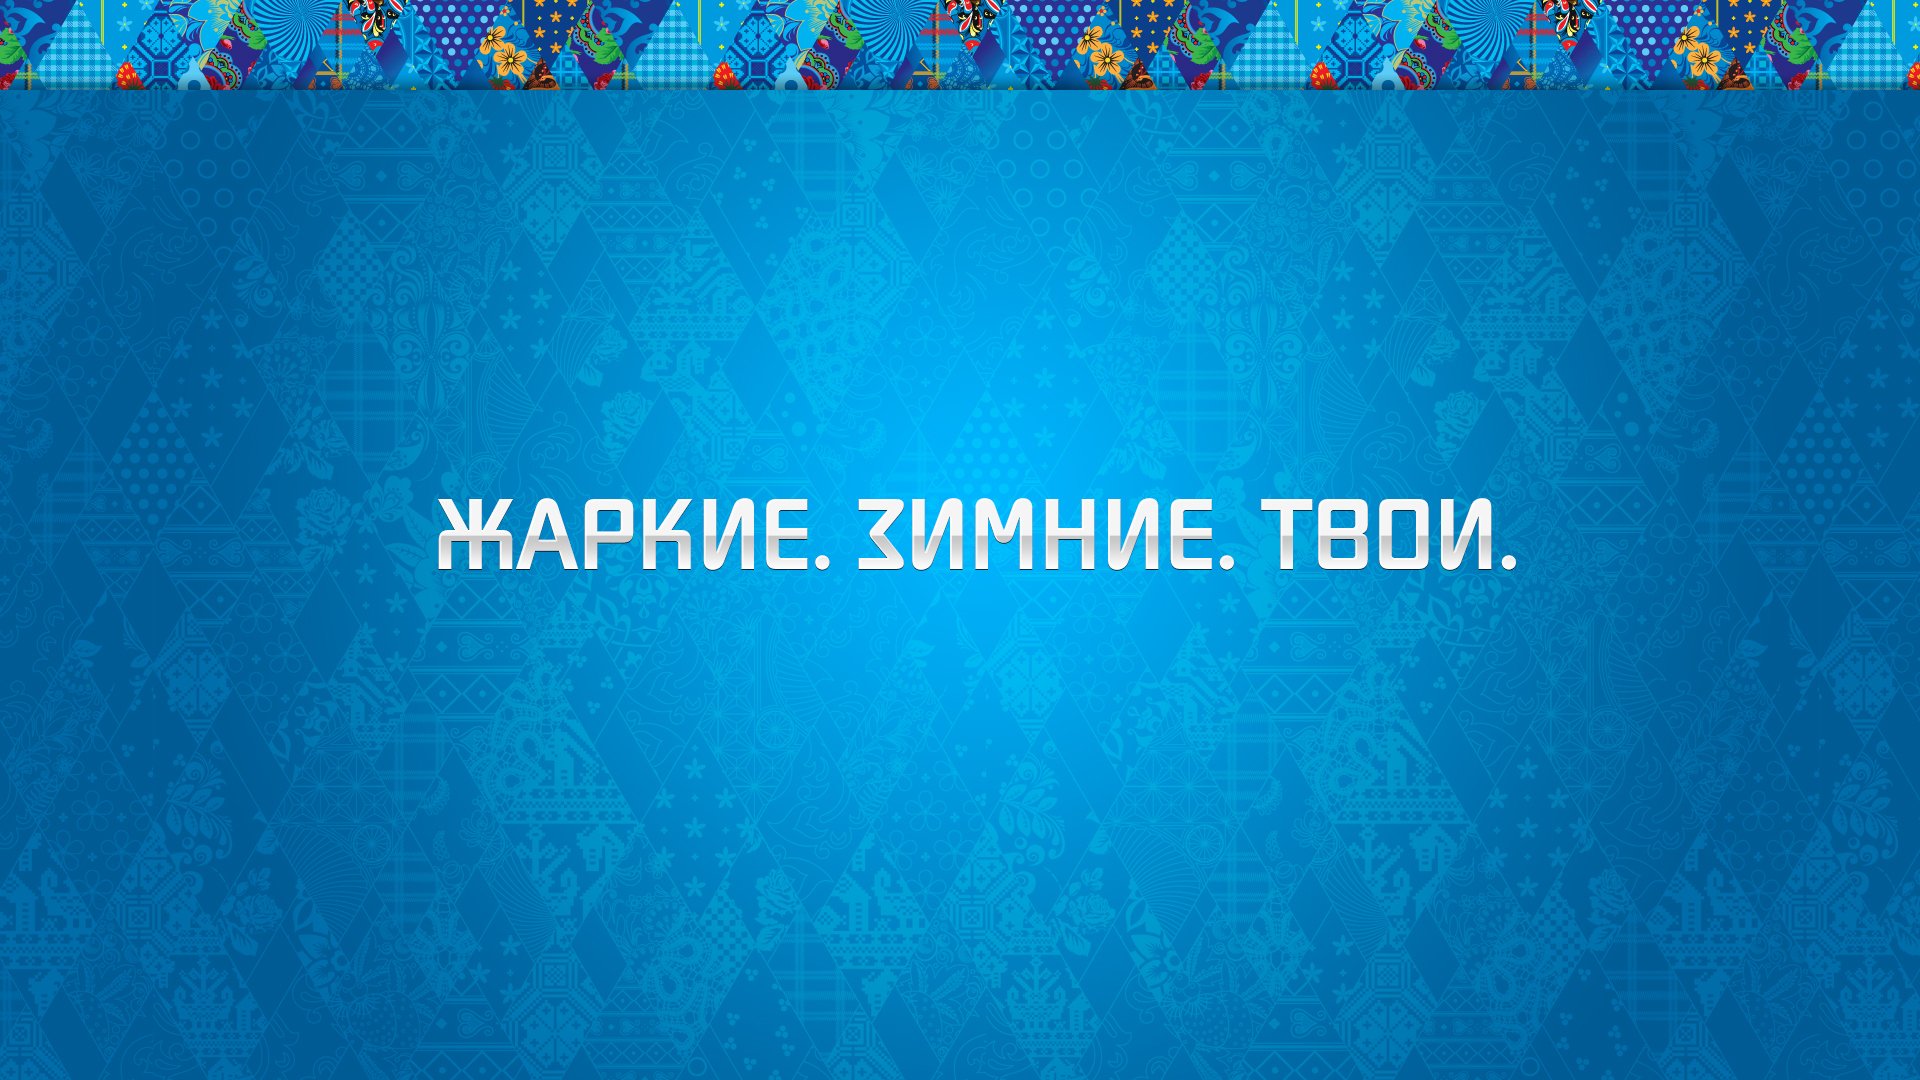 сочи-2014 сочи 2014 олимпиада зимние олимпийские игры орнамент фон синий